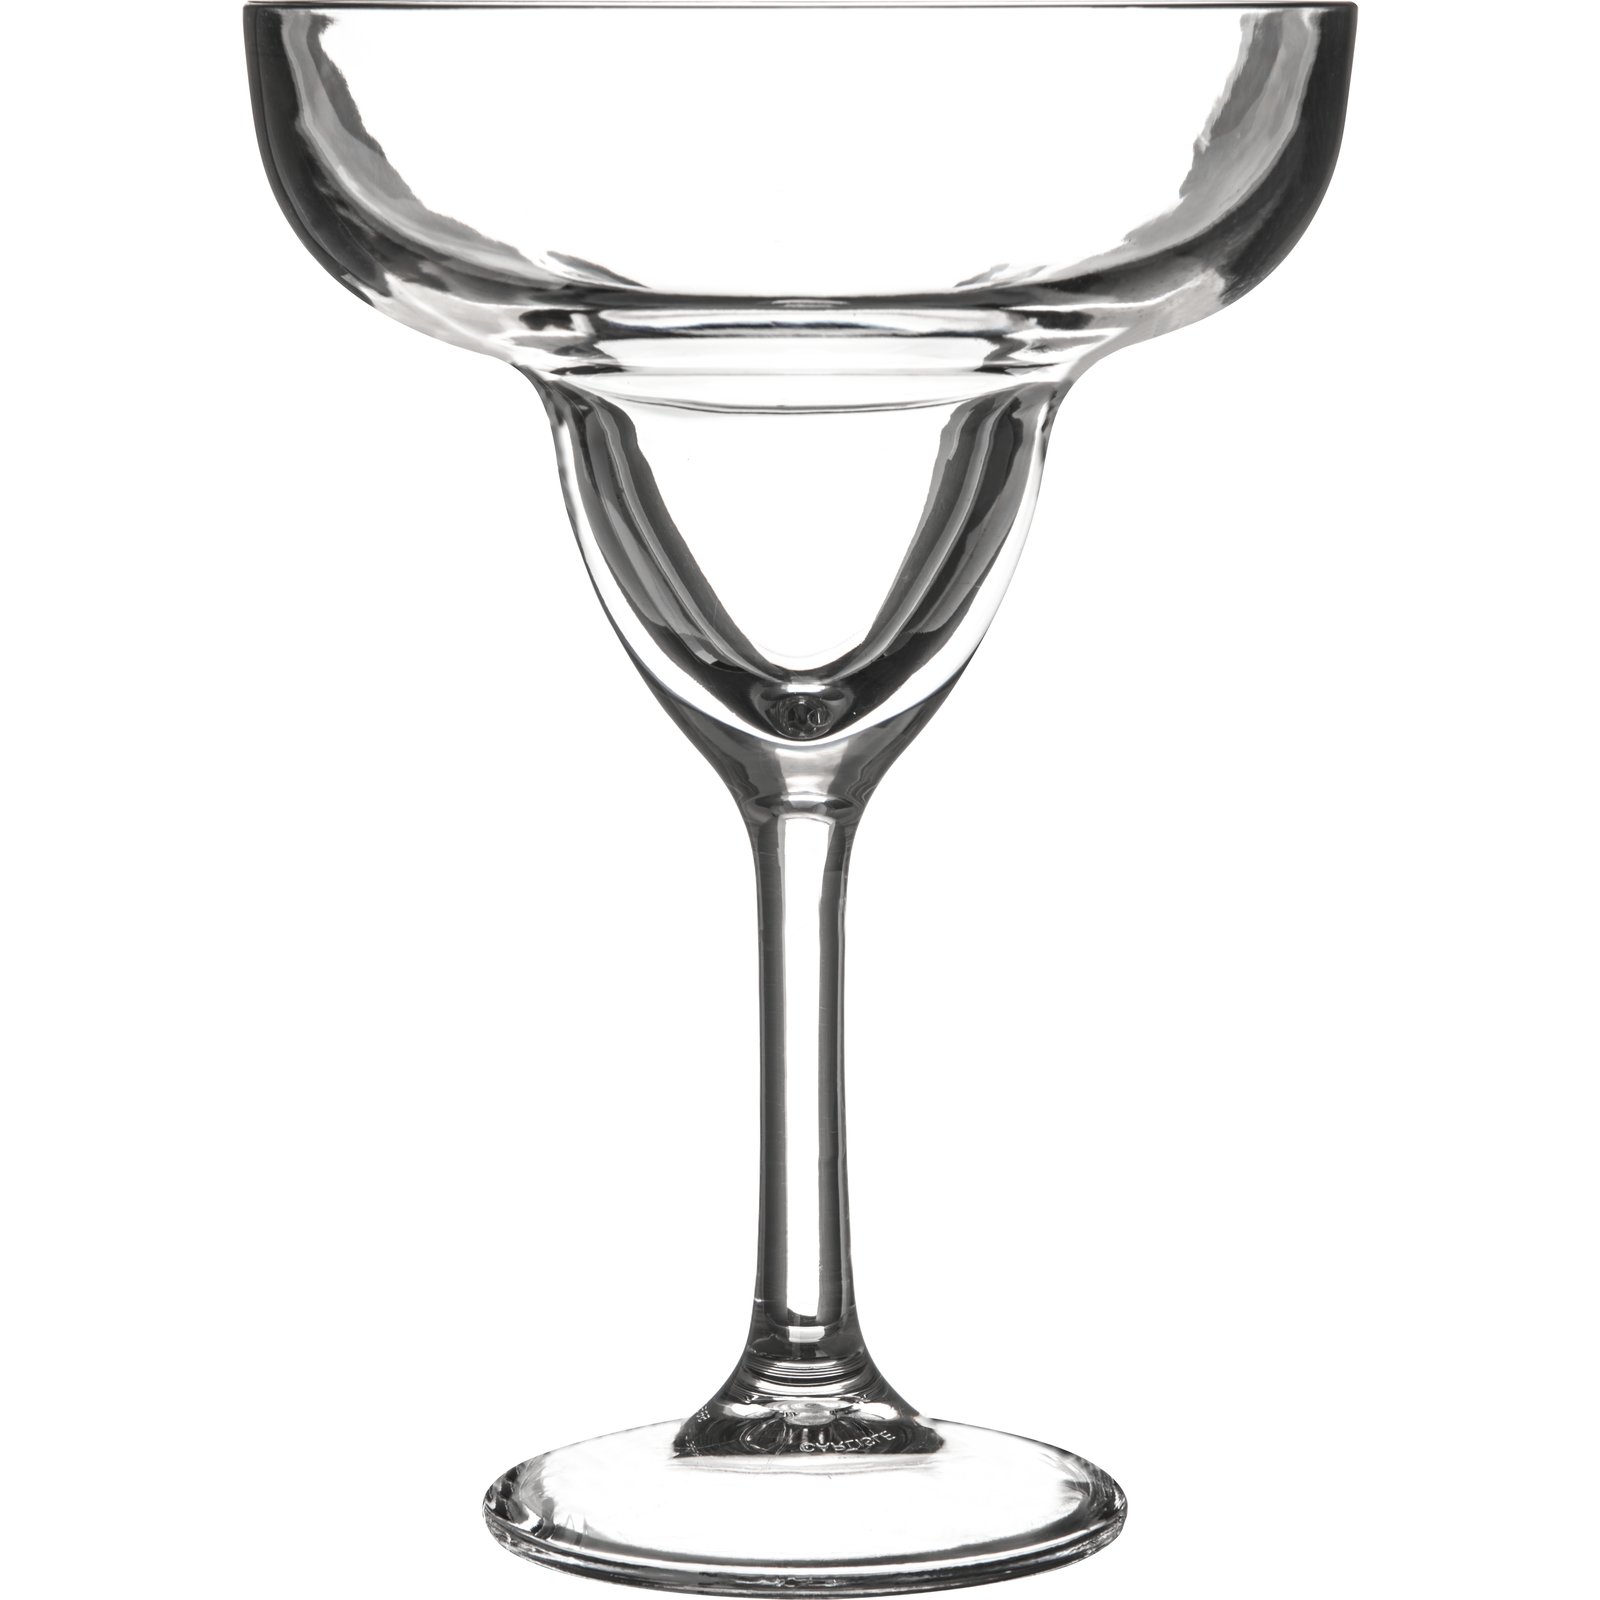 ❤️ NEW 4 Corelle WHITE LACE / COLONIAL MIST 16-oz TUMBLER GLASSES Flor –  Tarlton Place